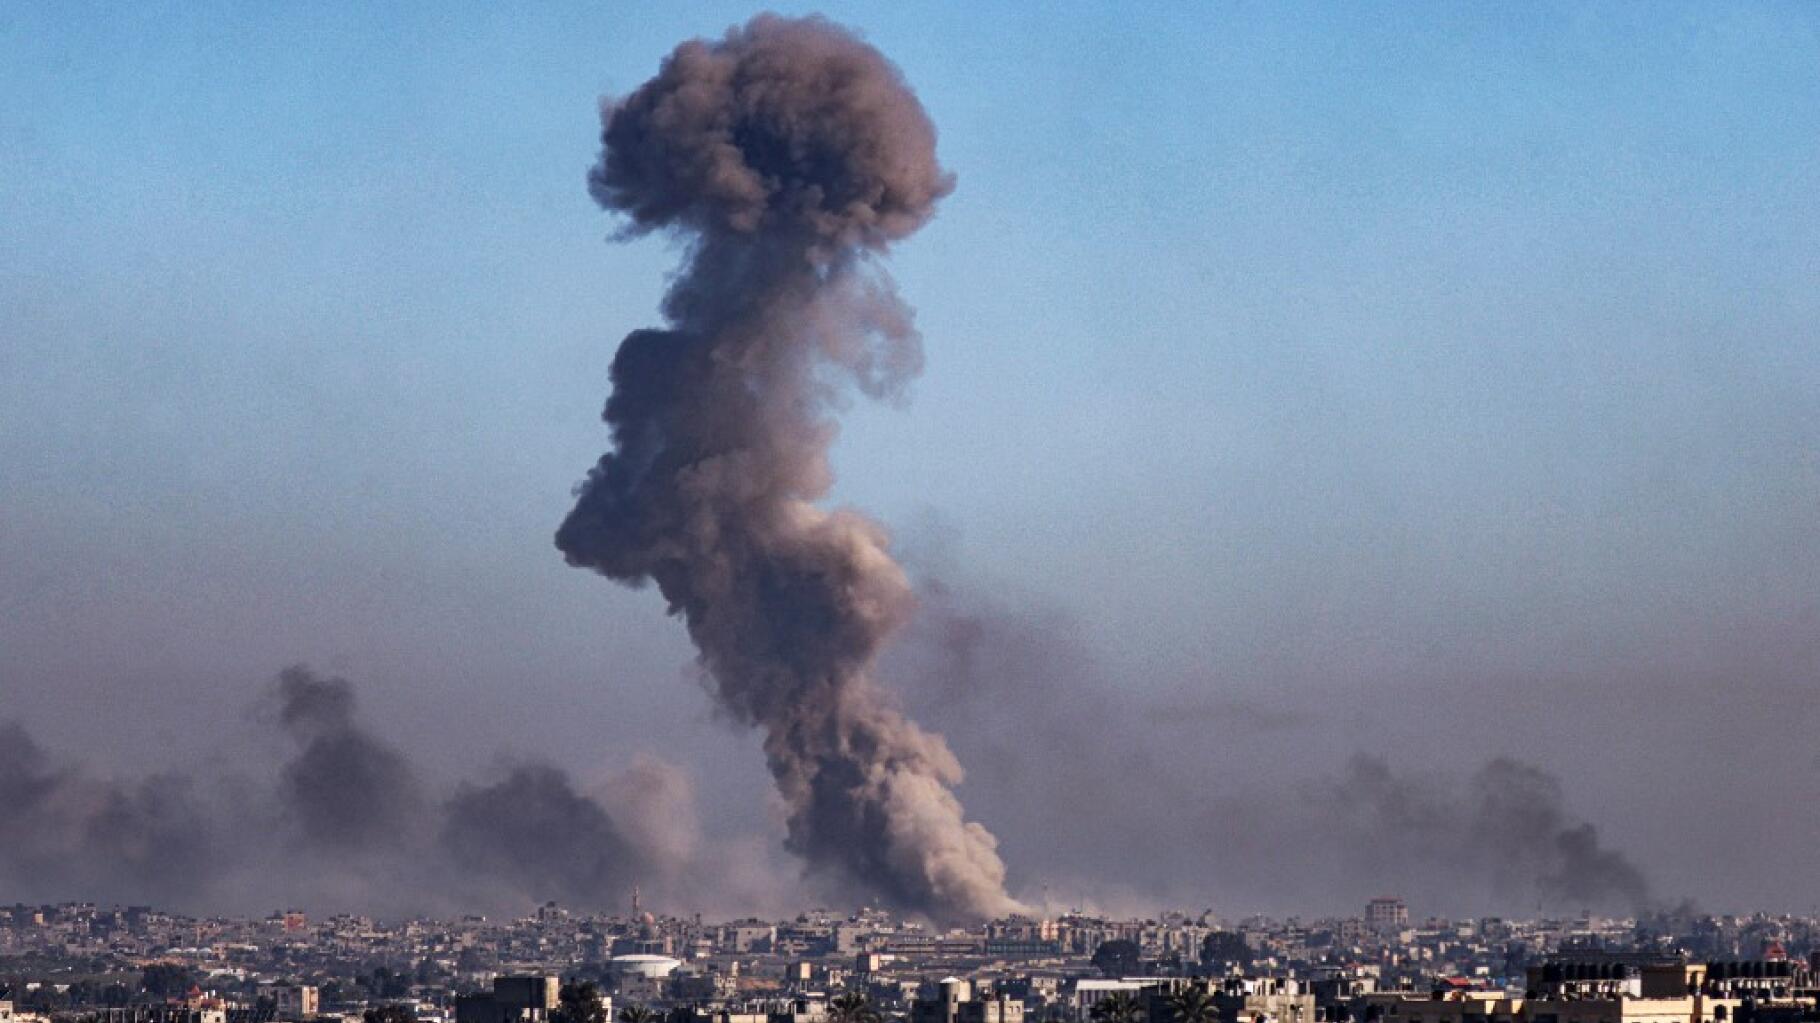   Gaza : ce que l’on sait des deux otages israéliens libérés à Rafah, à la frontière avec l’Égypte  